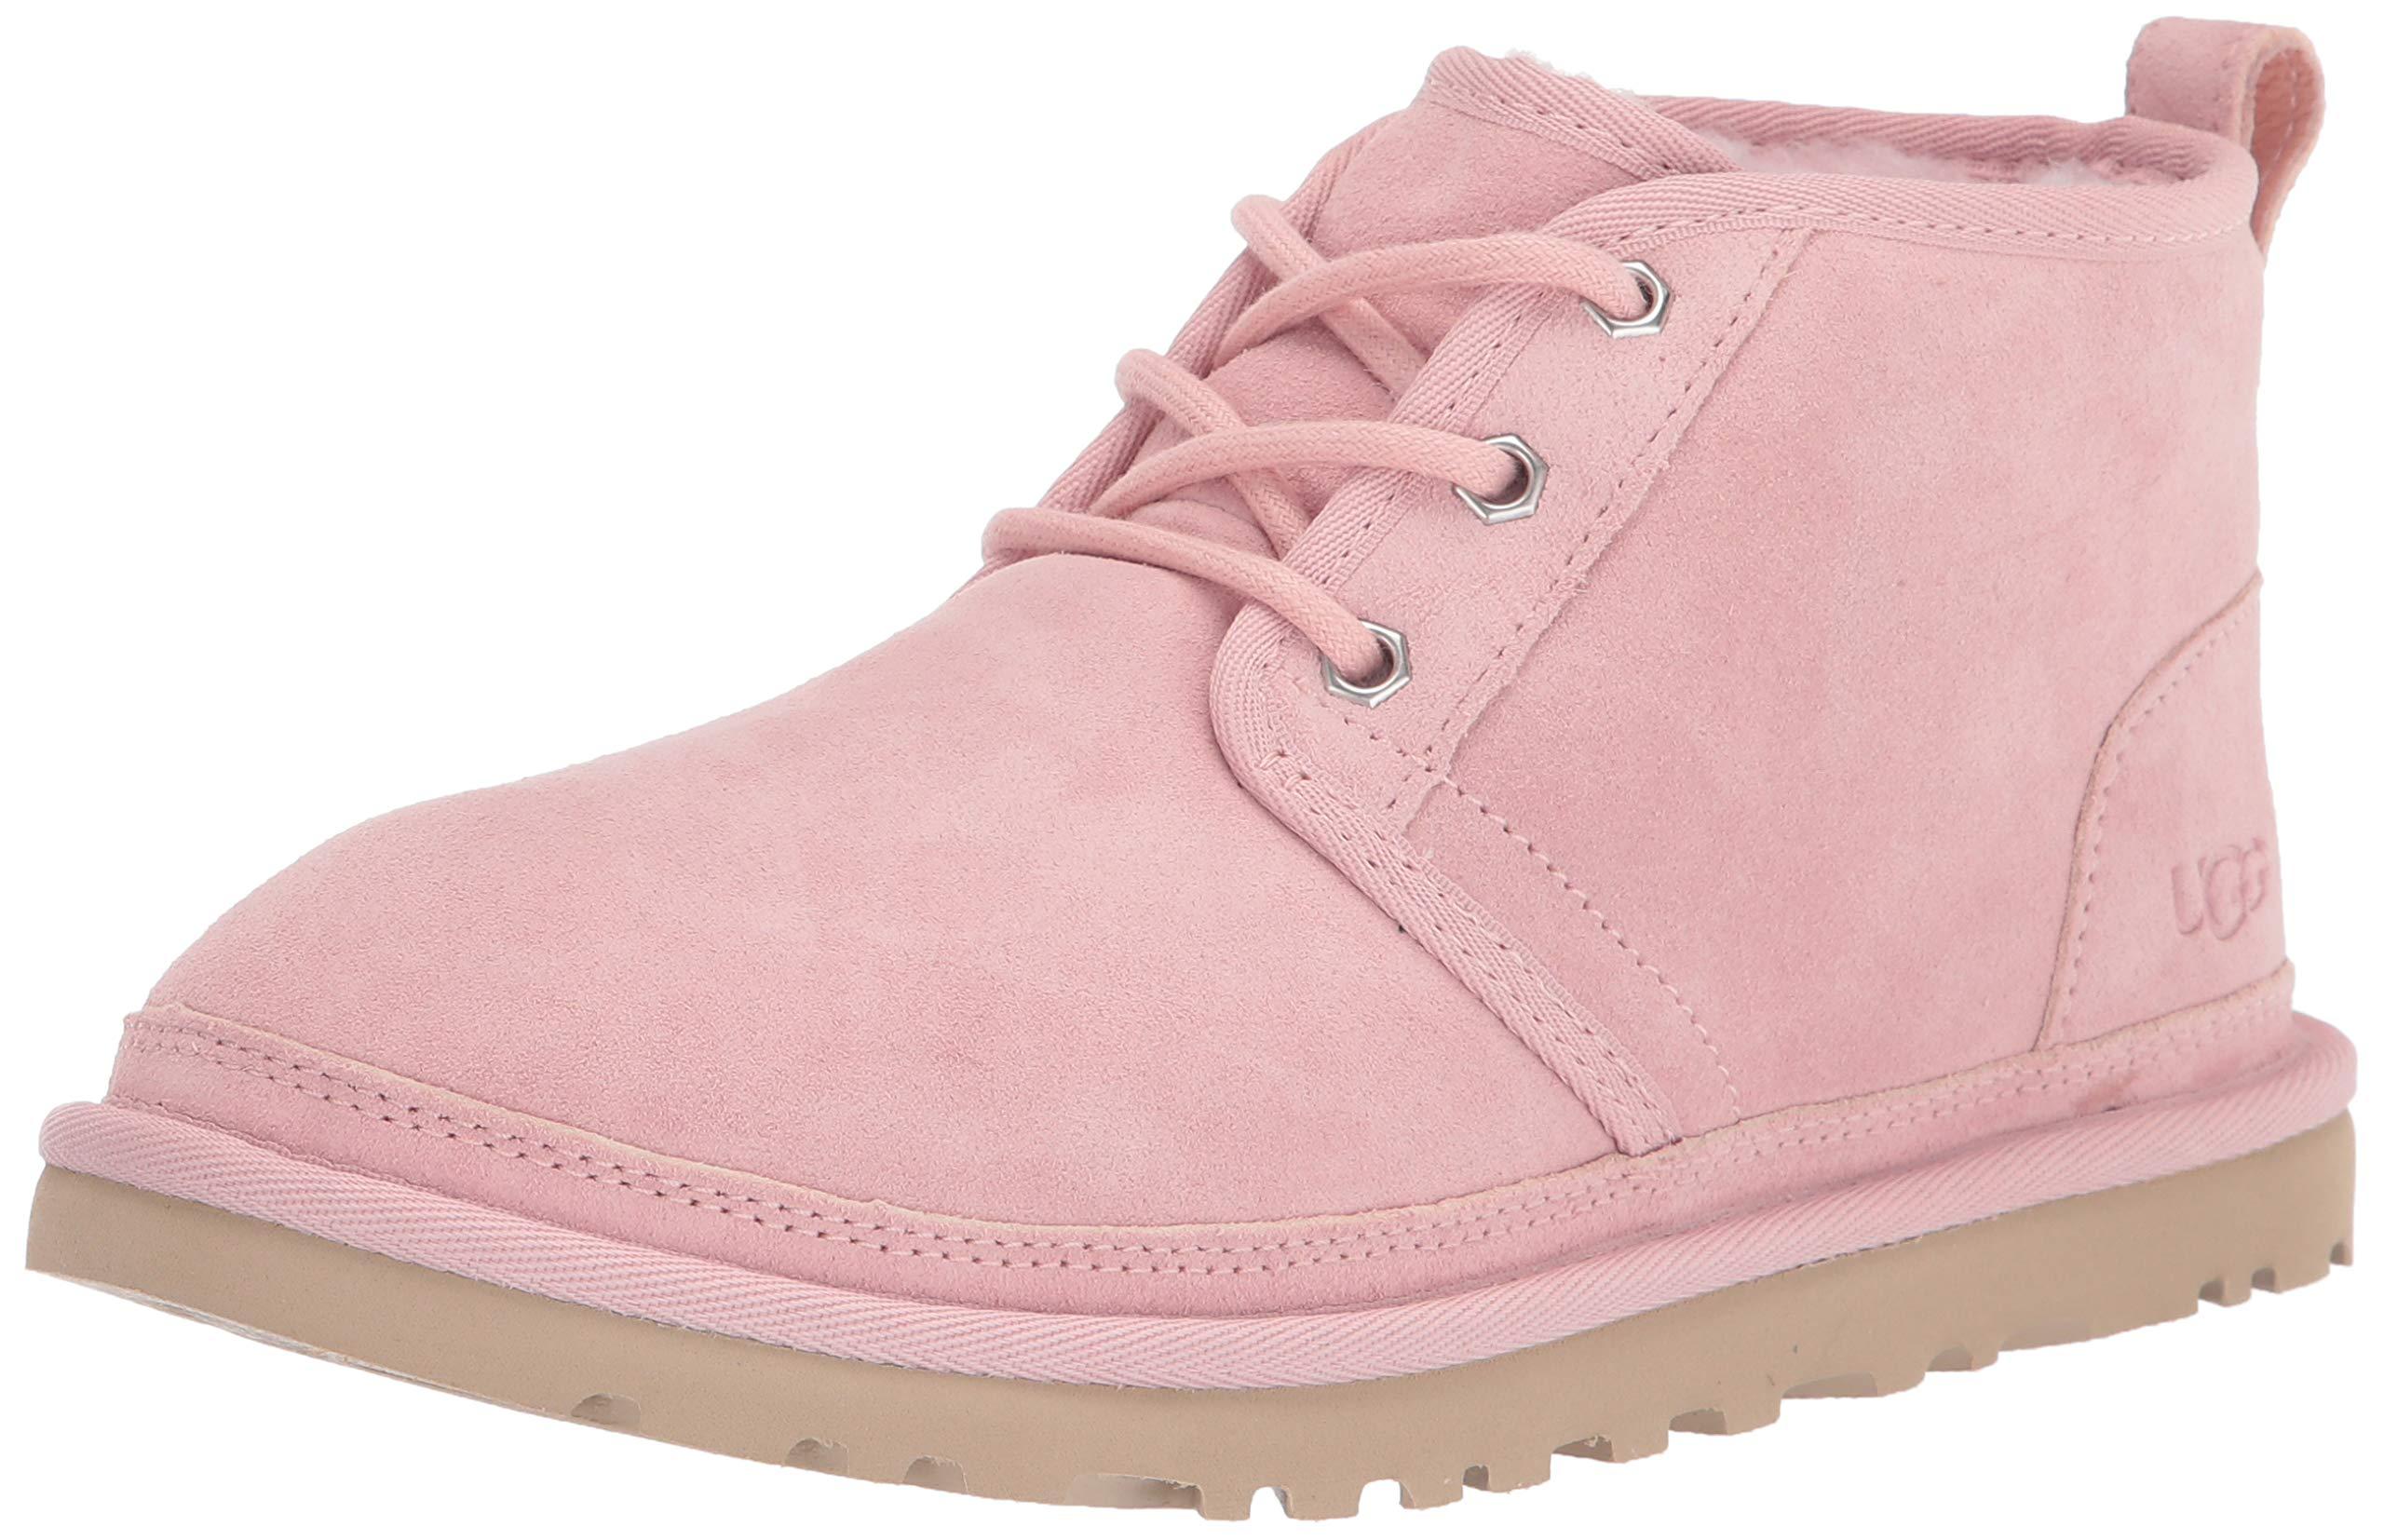 neumel ugg boots pink